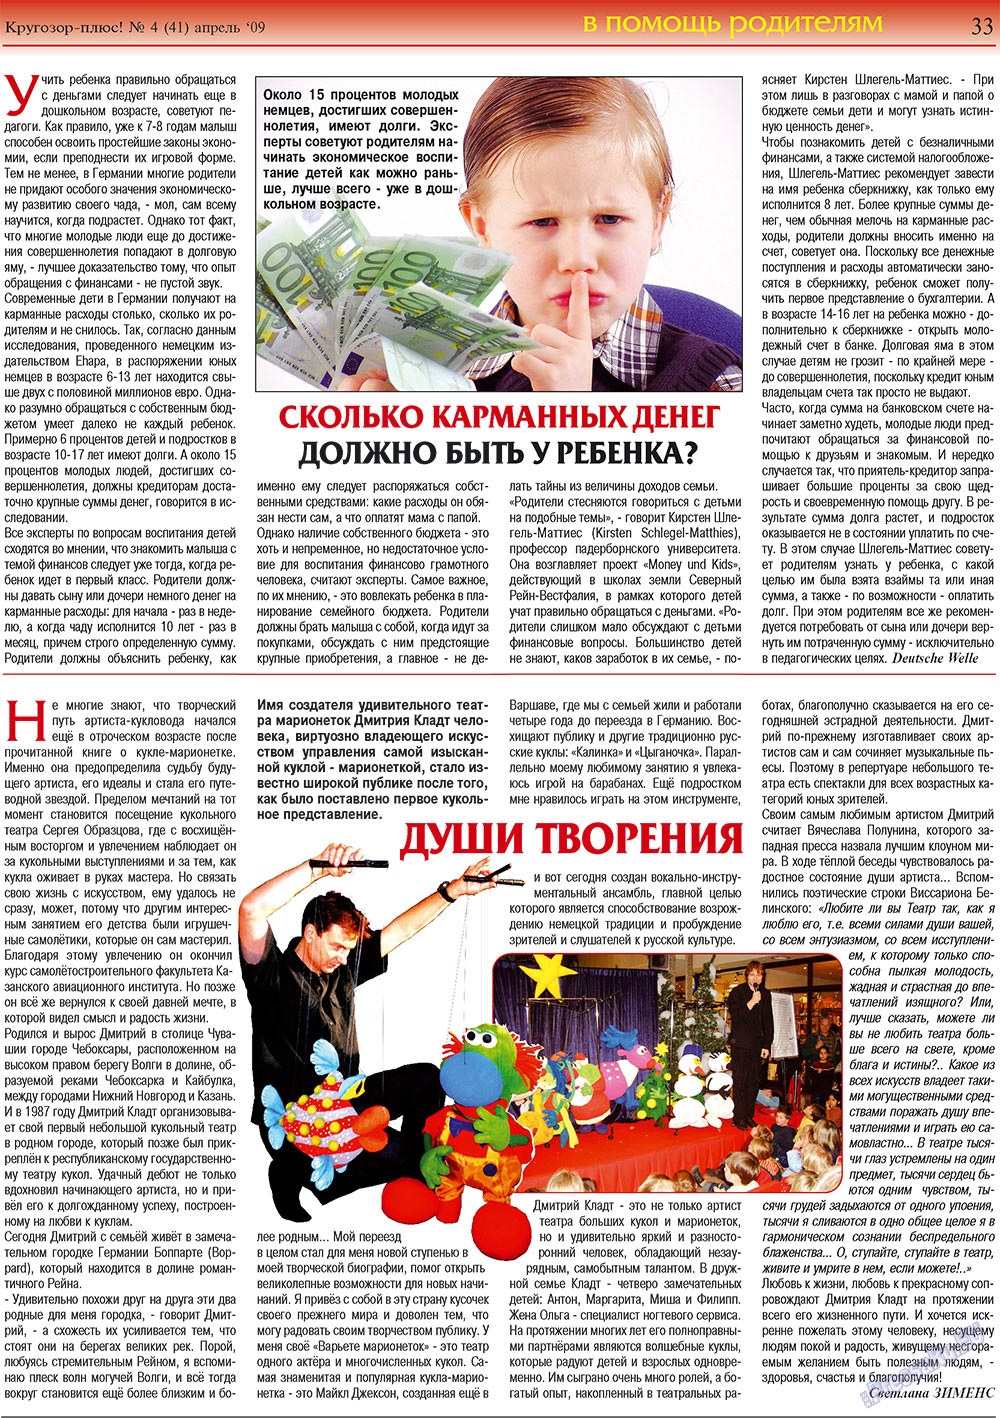 Кругозор плюс!, газета. 2009 №4 стр.33